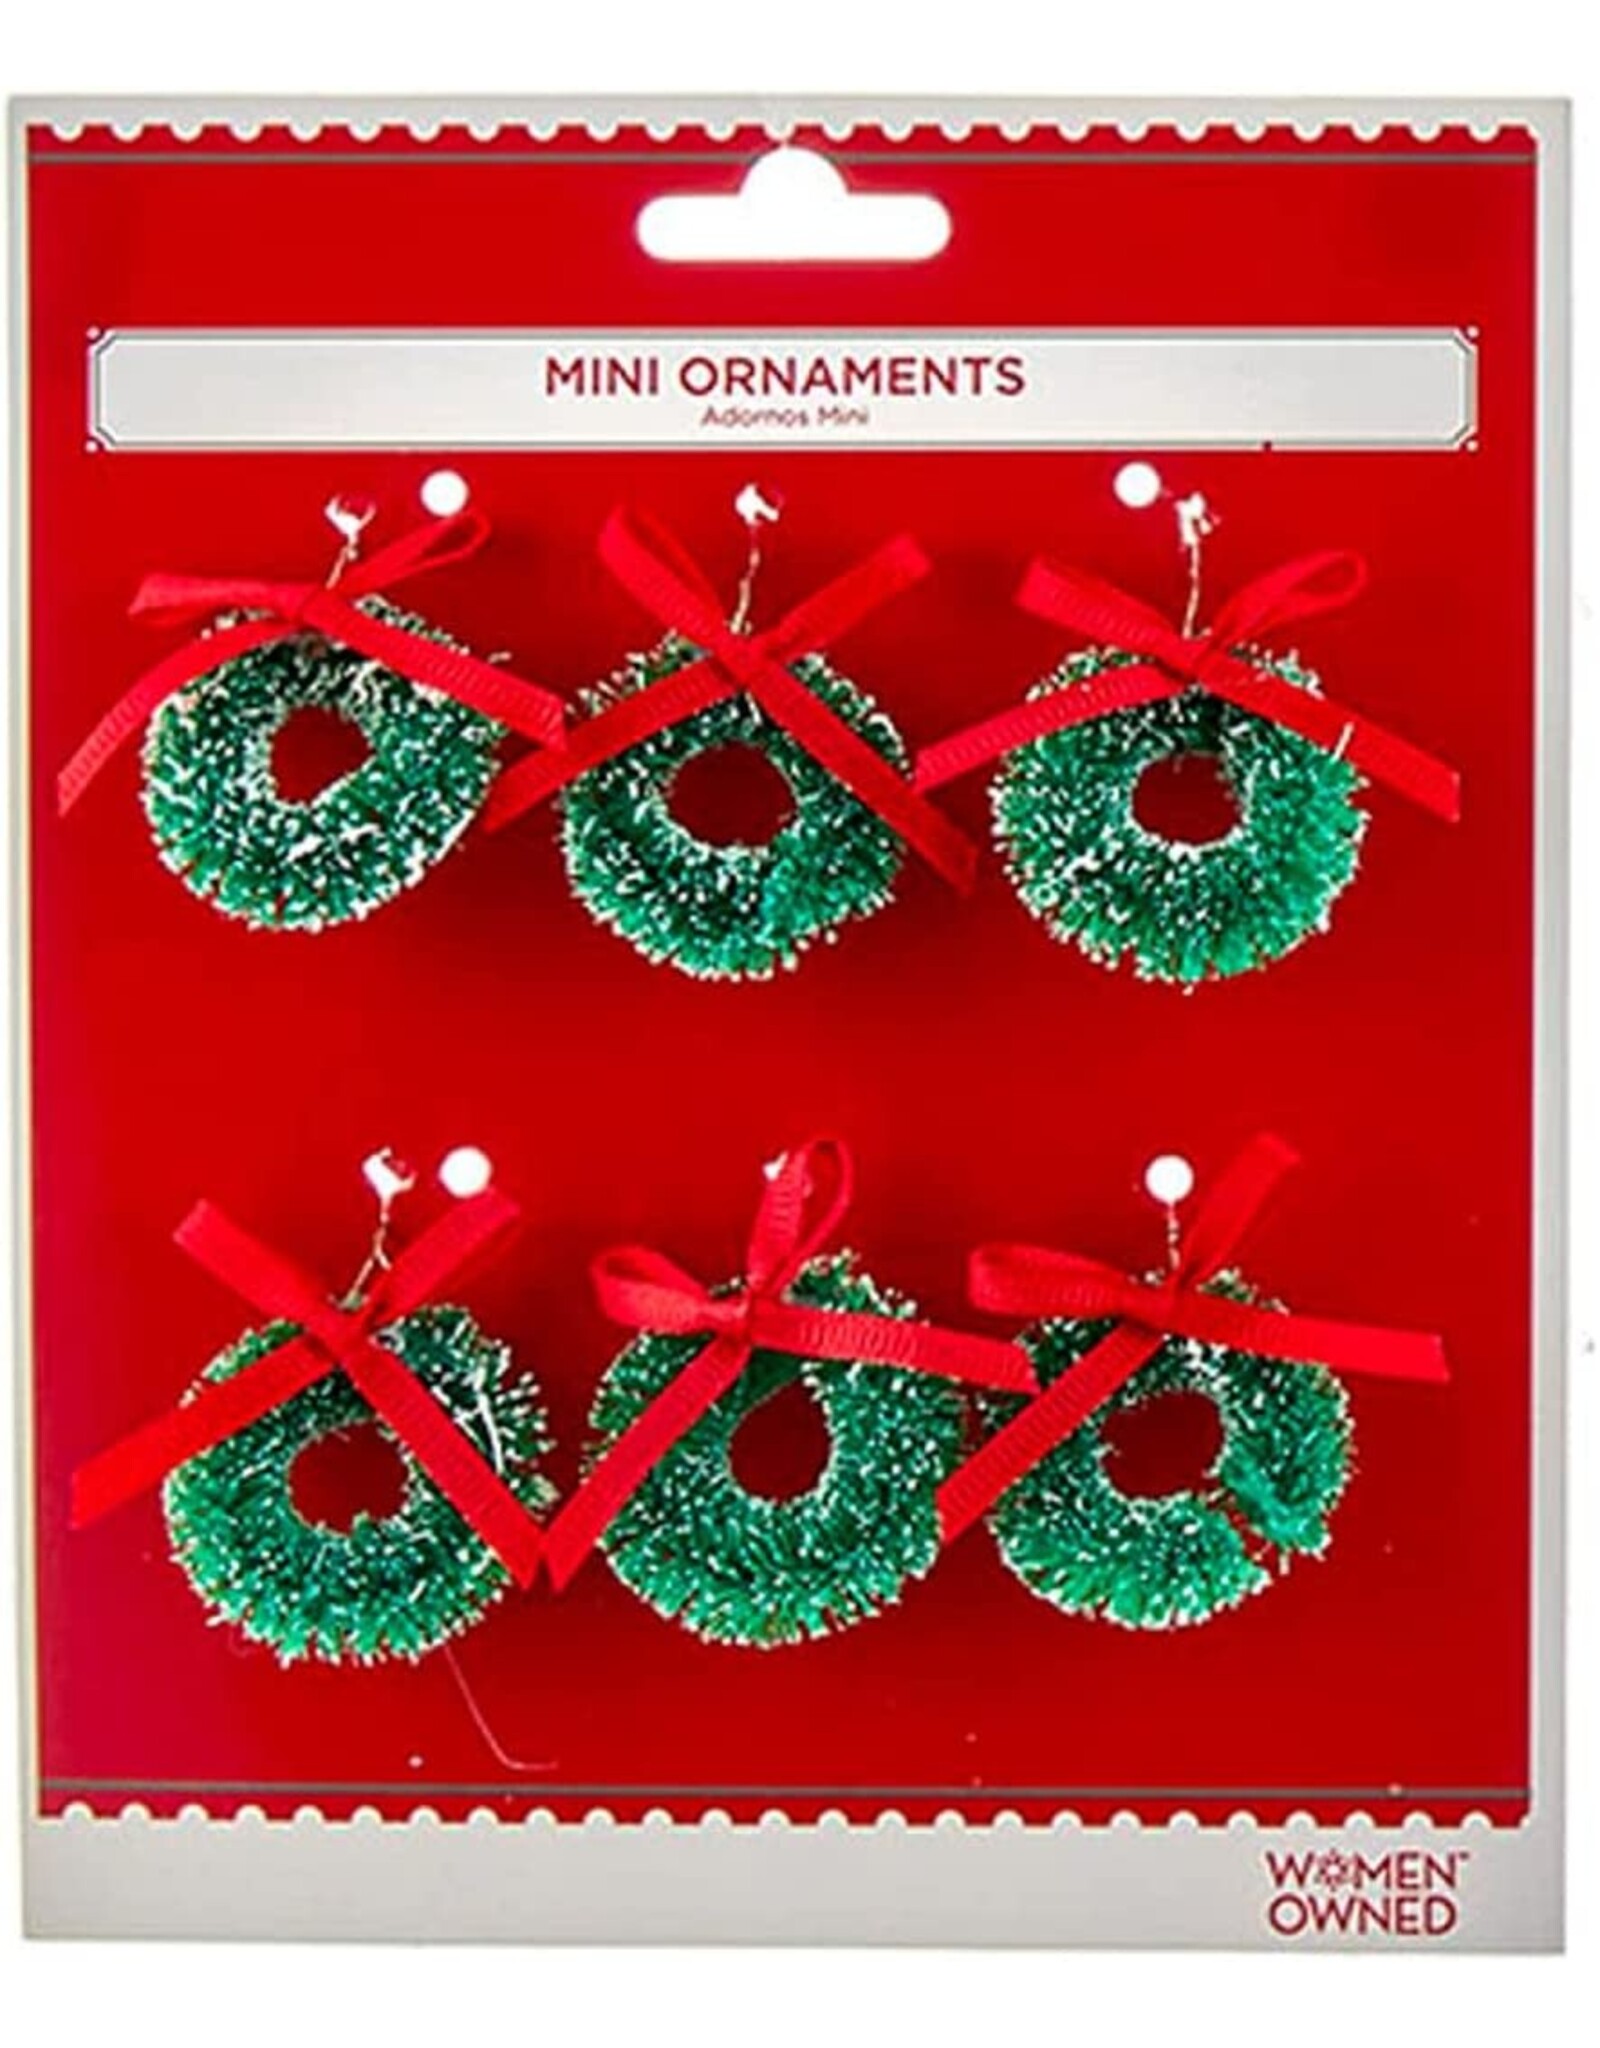 Kurt Adler Miniature Ornaments Mini Wreaths w Red Bows 1 Set w 6pcs